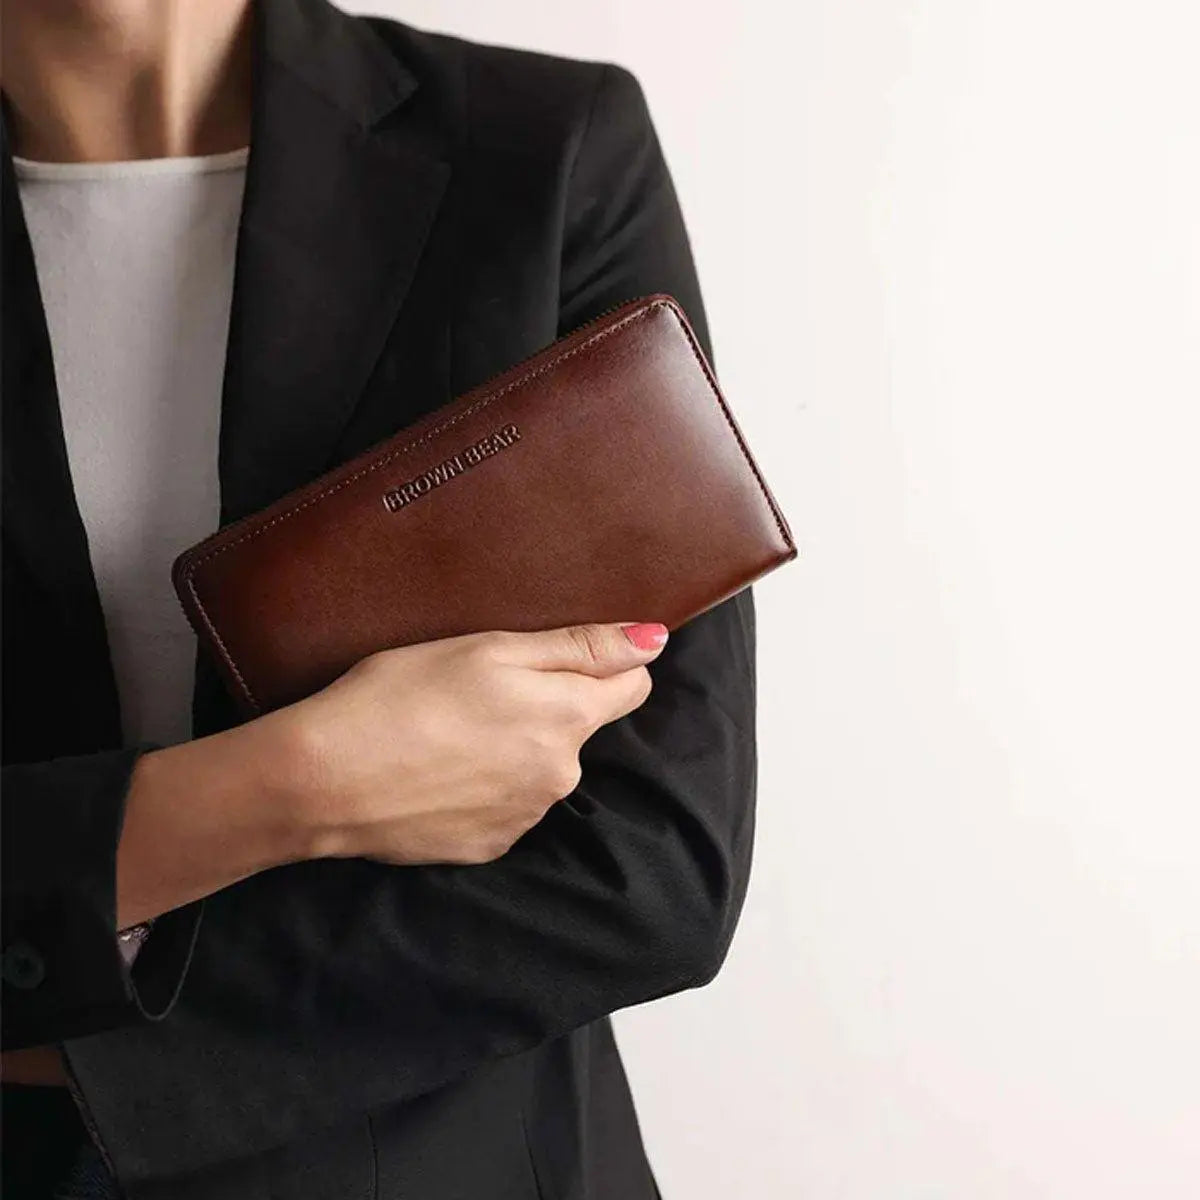 Manhattan Ladies Wallet in Genuine Leather - Brown Bear